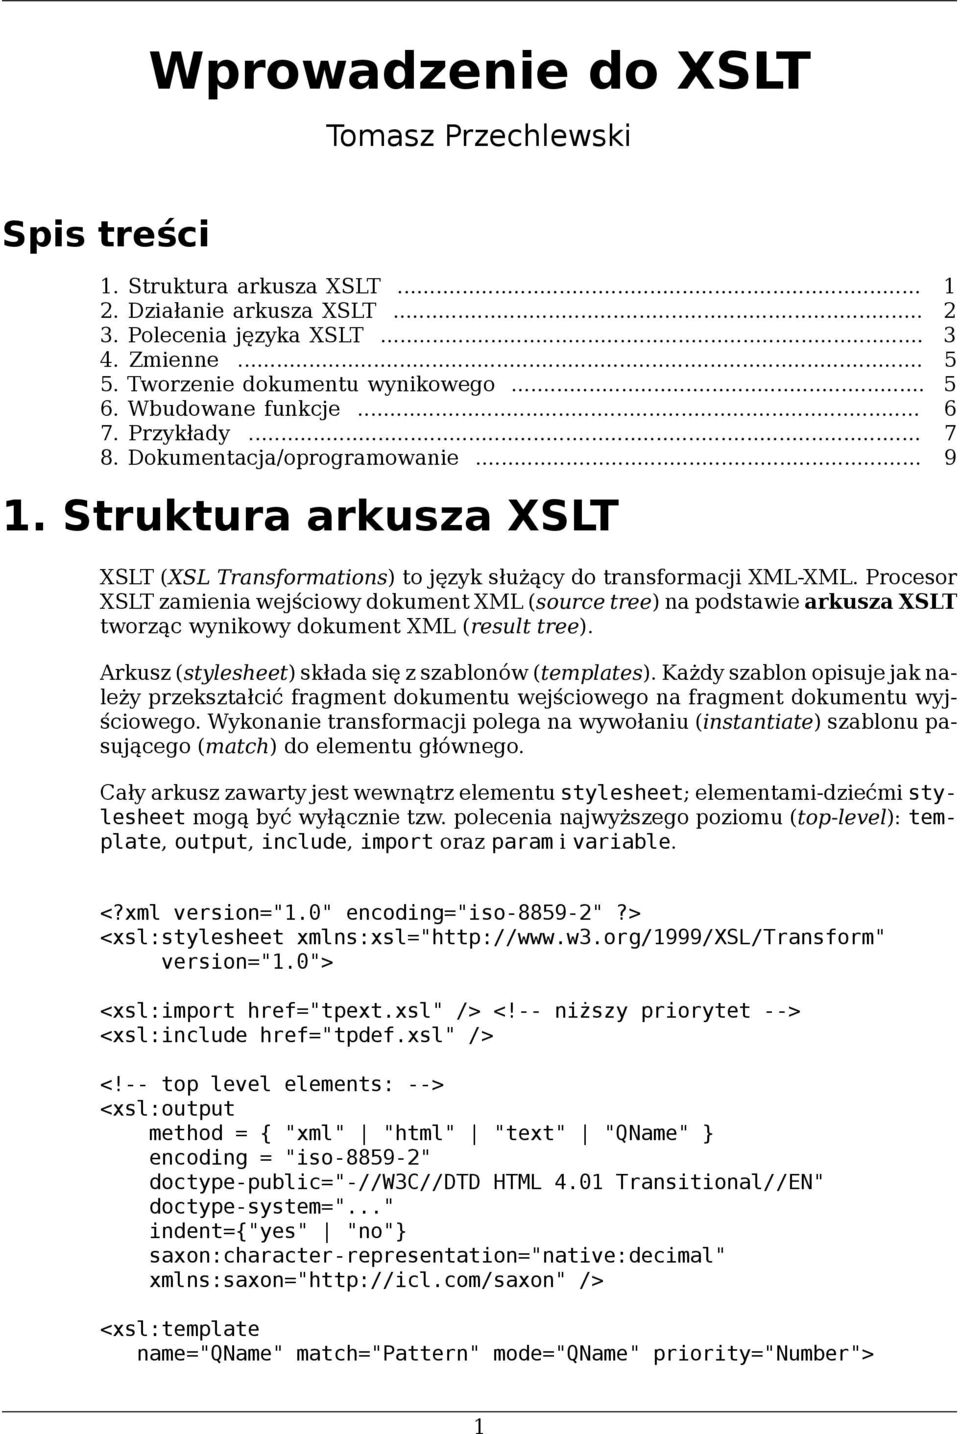 Procesor XSLT zamienia wejściowy dokument XML (source tree) na podstawie arkusza XSLT tworząc wynikowy dokument XML (result tree). Arkusz (stylesheet) składa się z szablonów (templates).